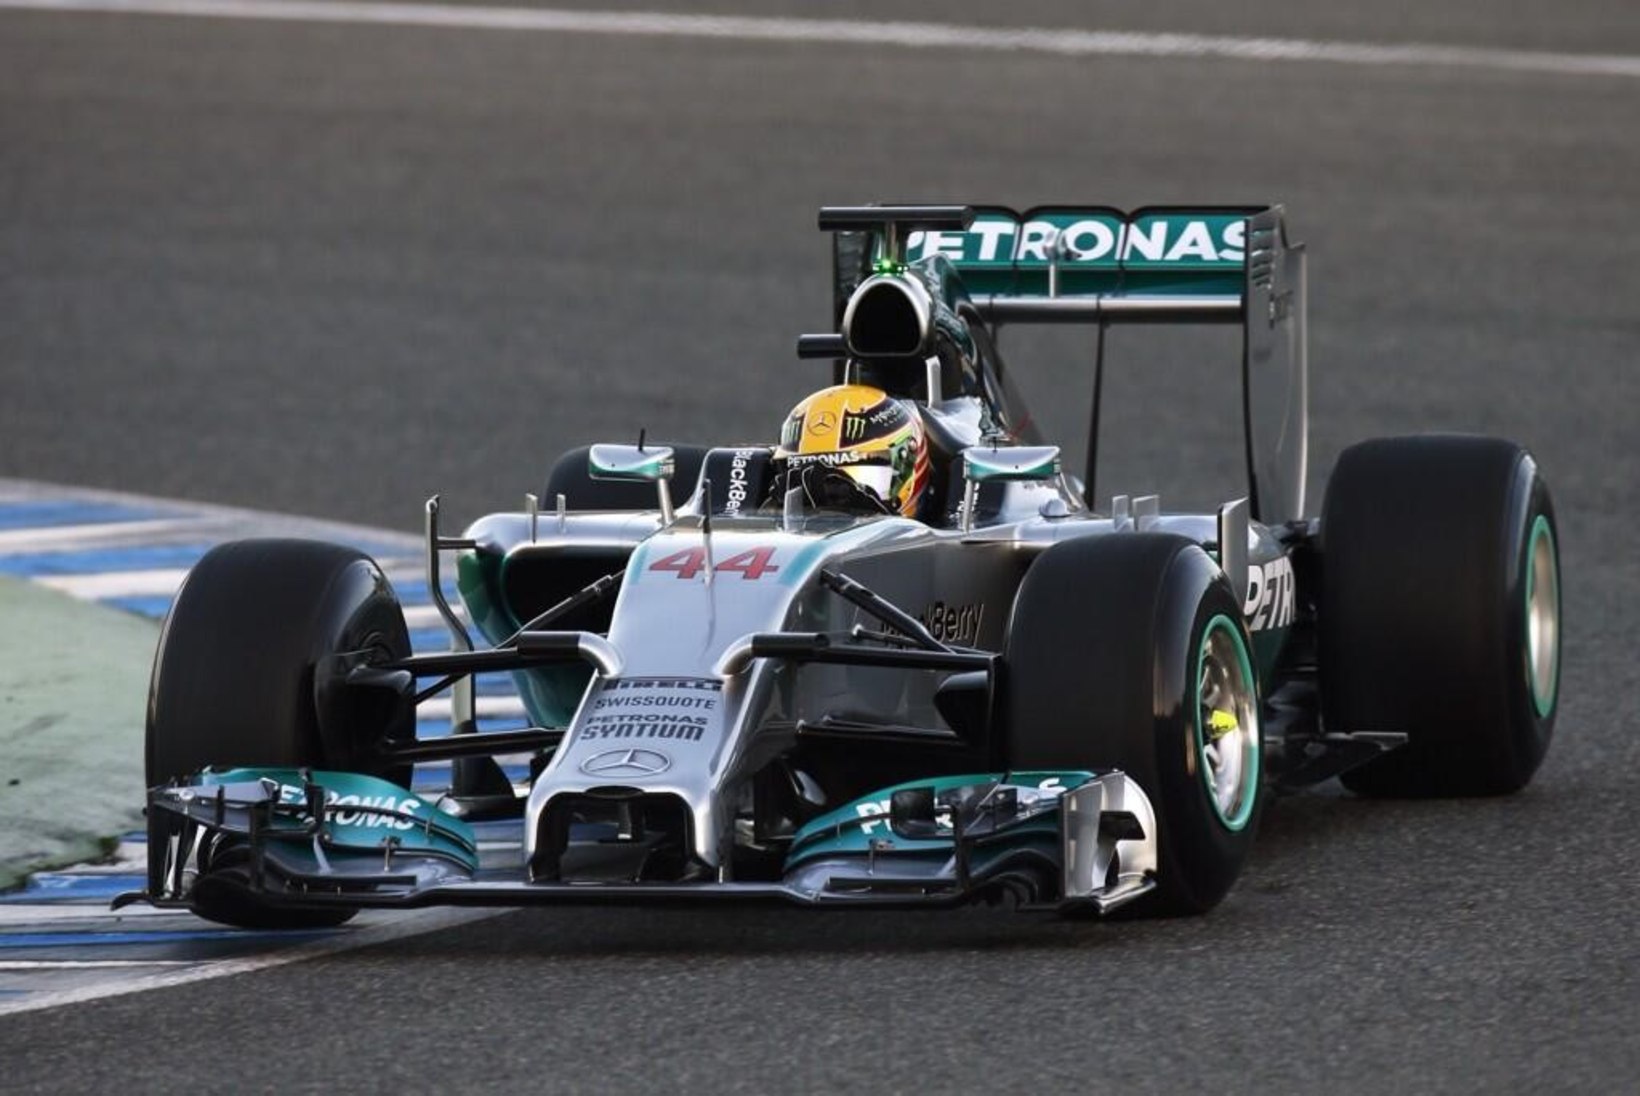 FOTOD: Mercedese F1 meeskond esitles uut vormelit, millel seisab Schumacherit innustav kiri